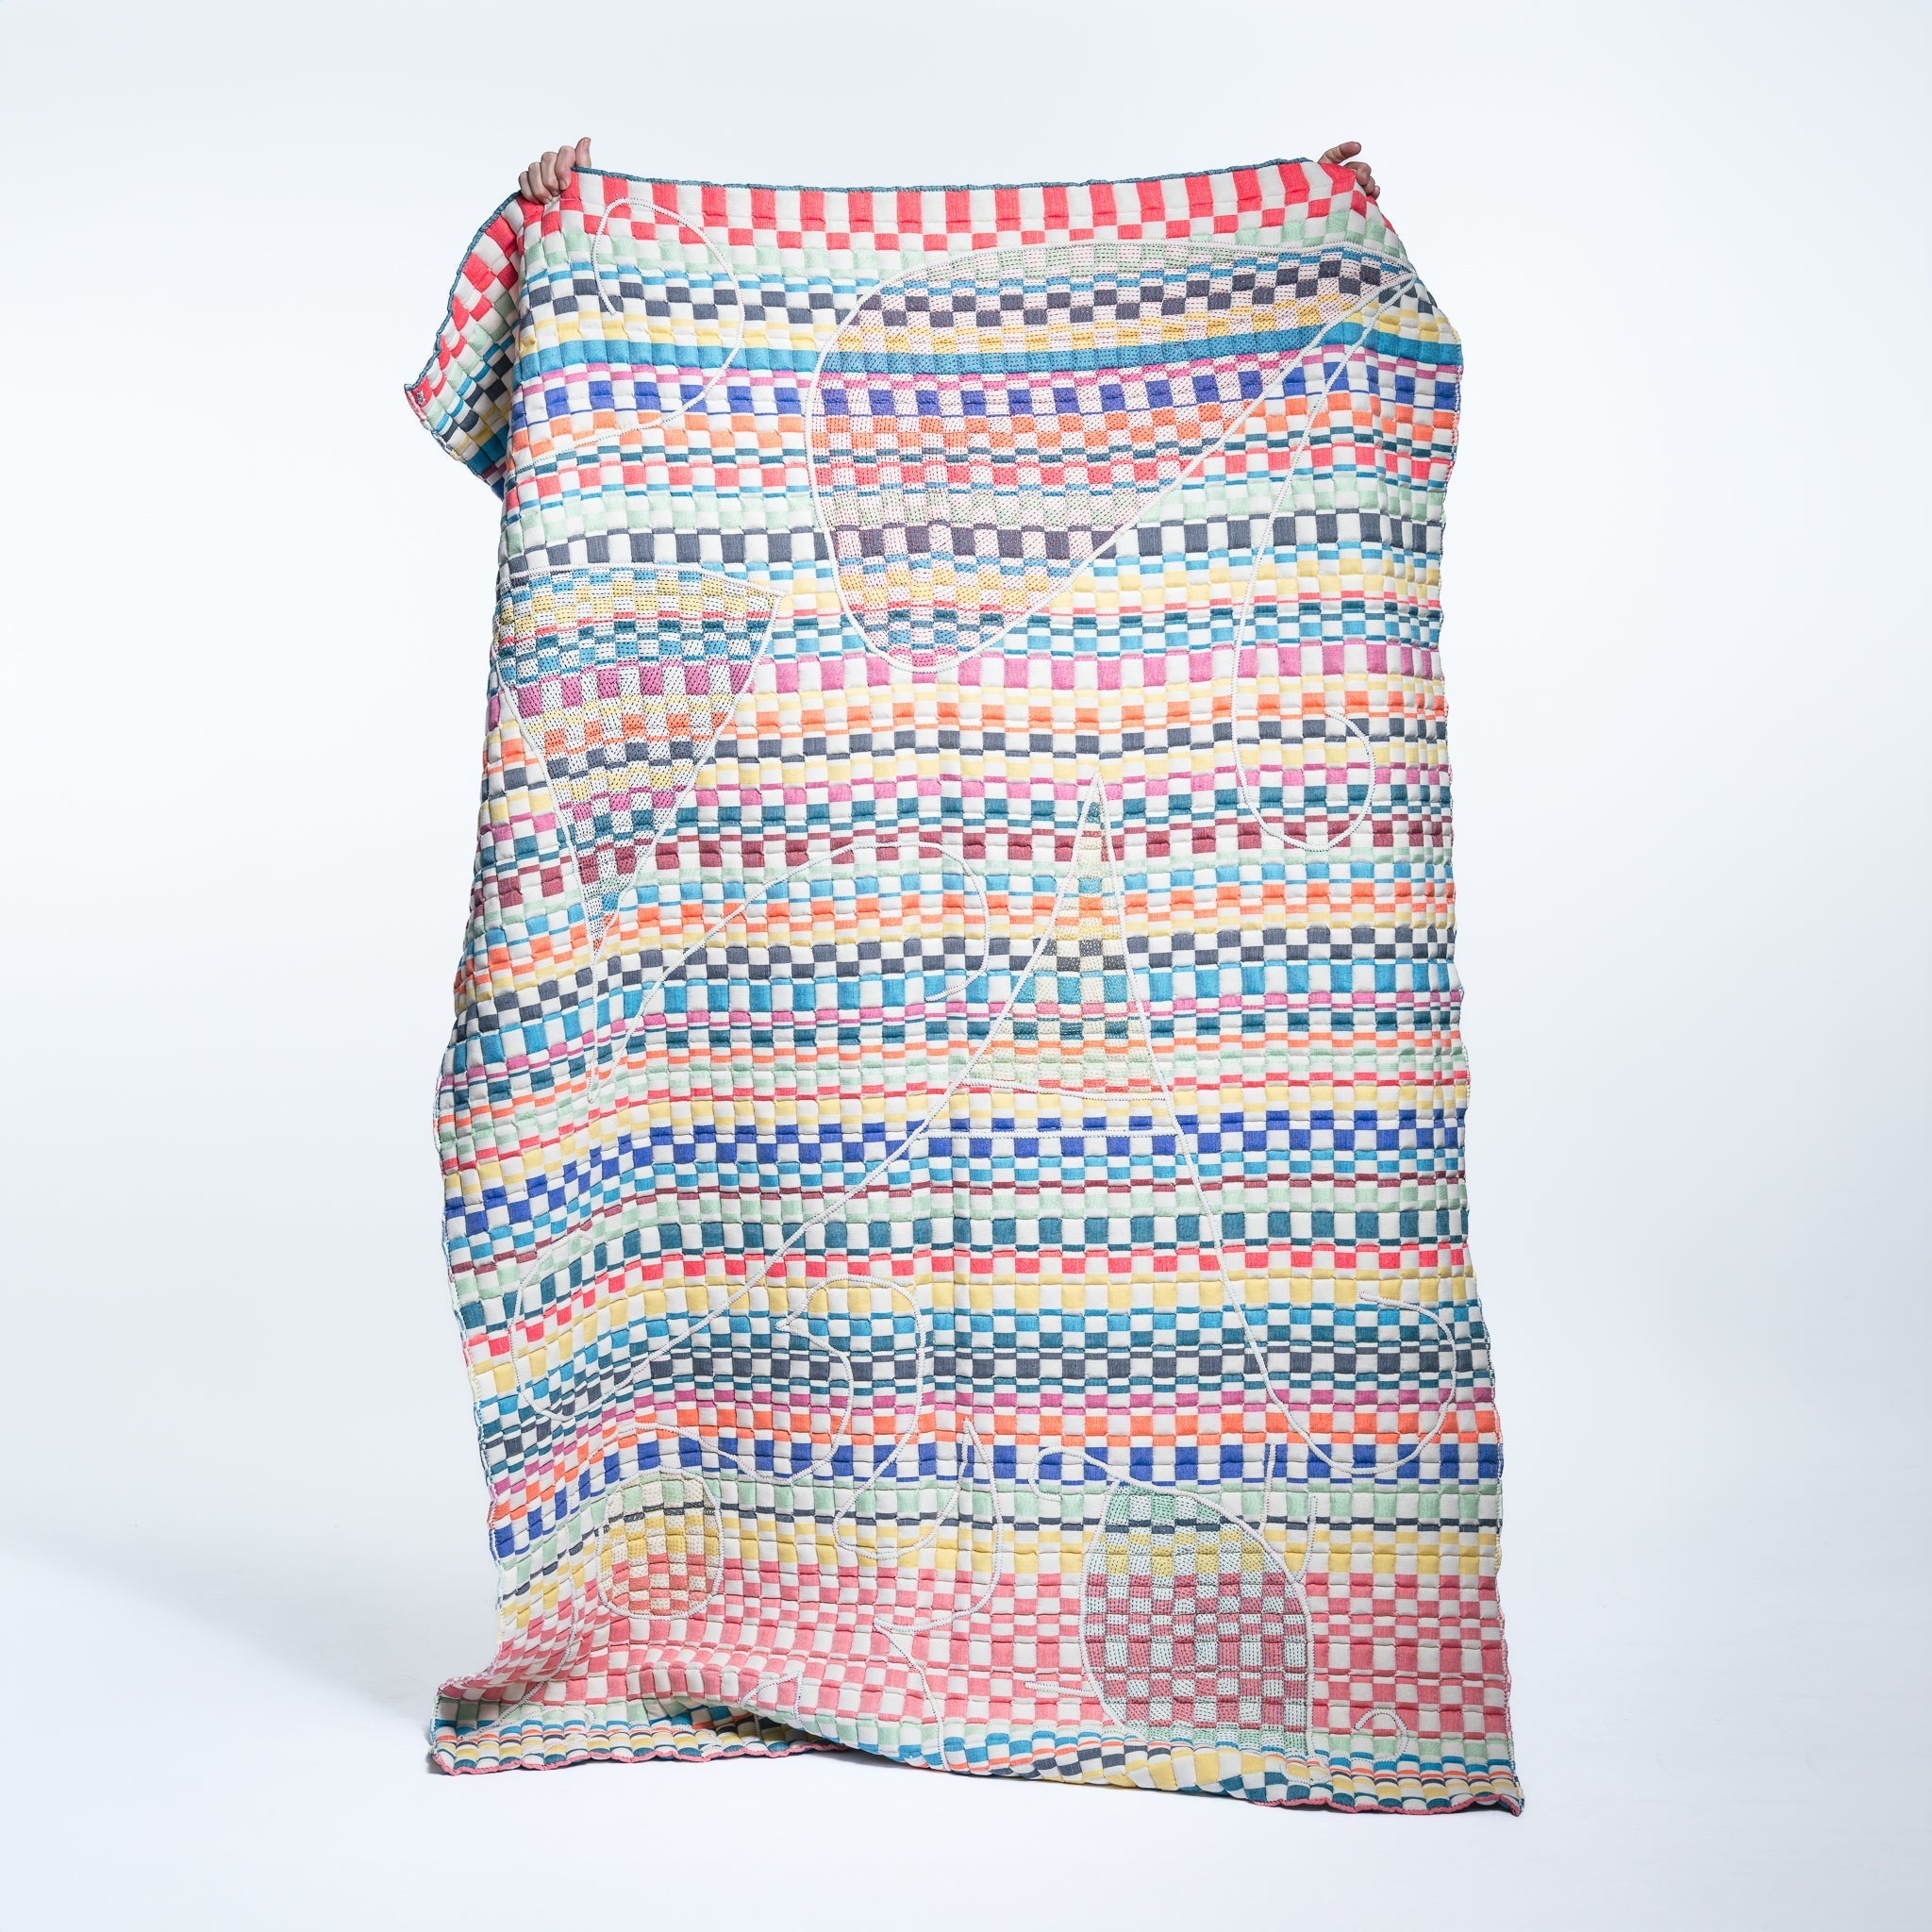 Sujni Colorful Striped Quilt 